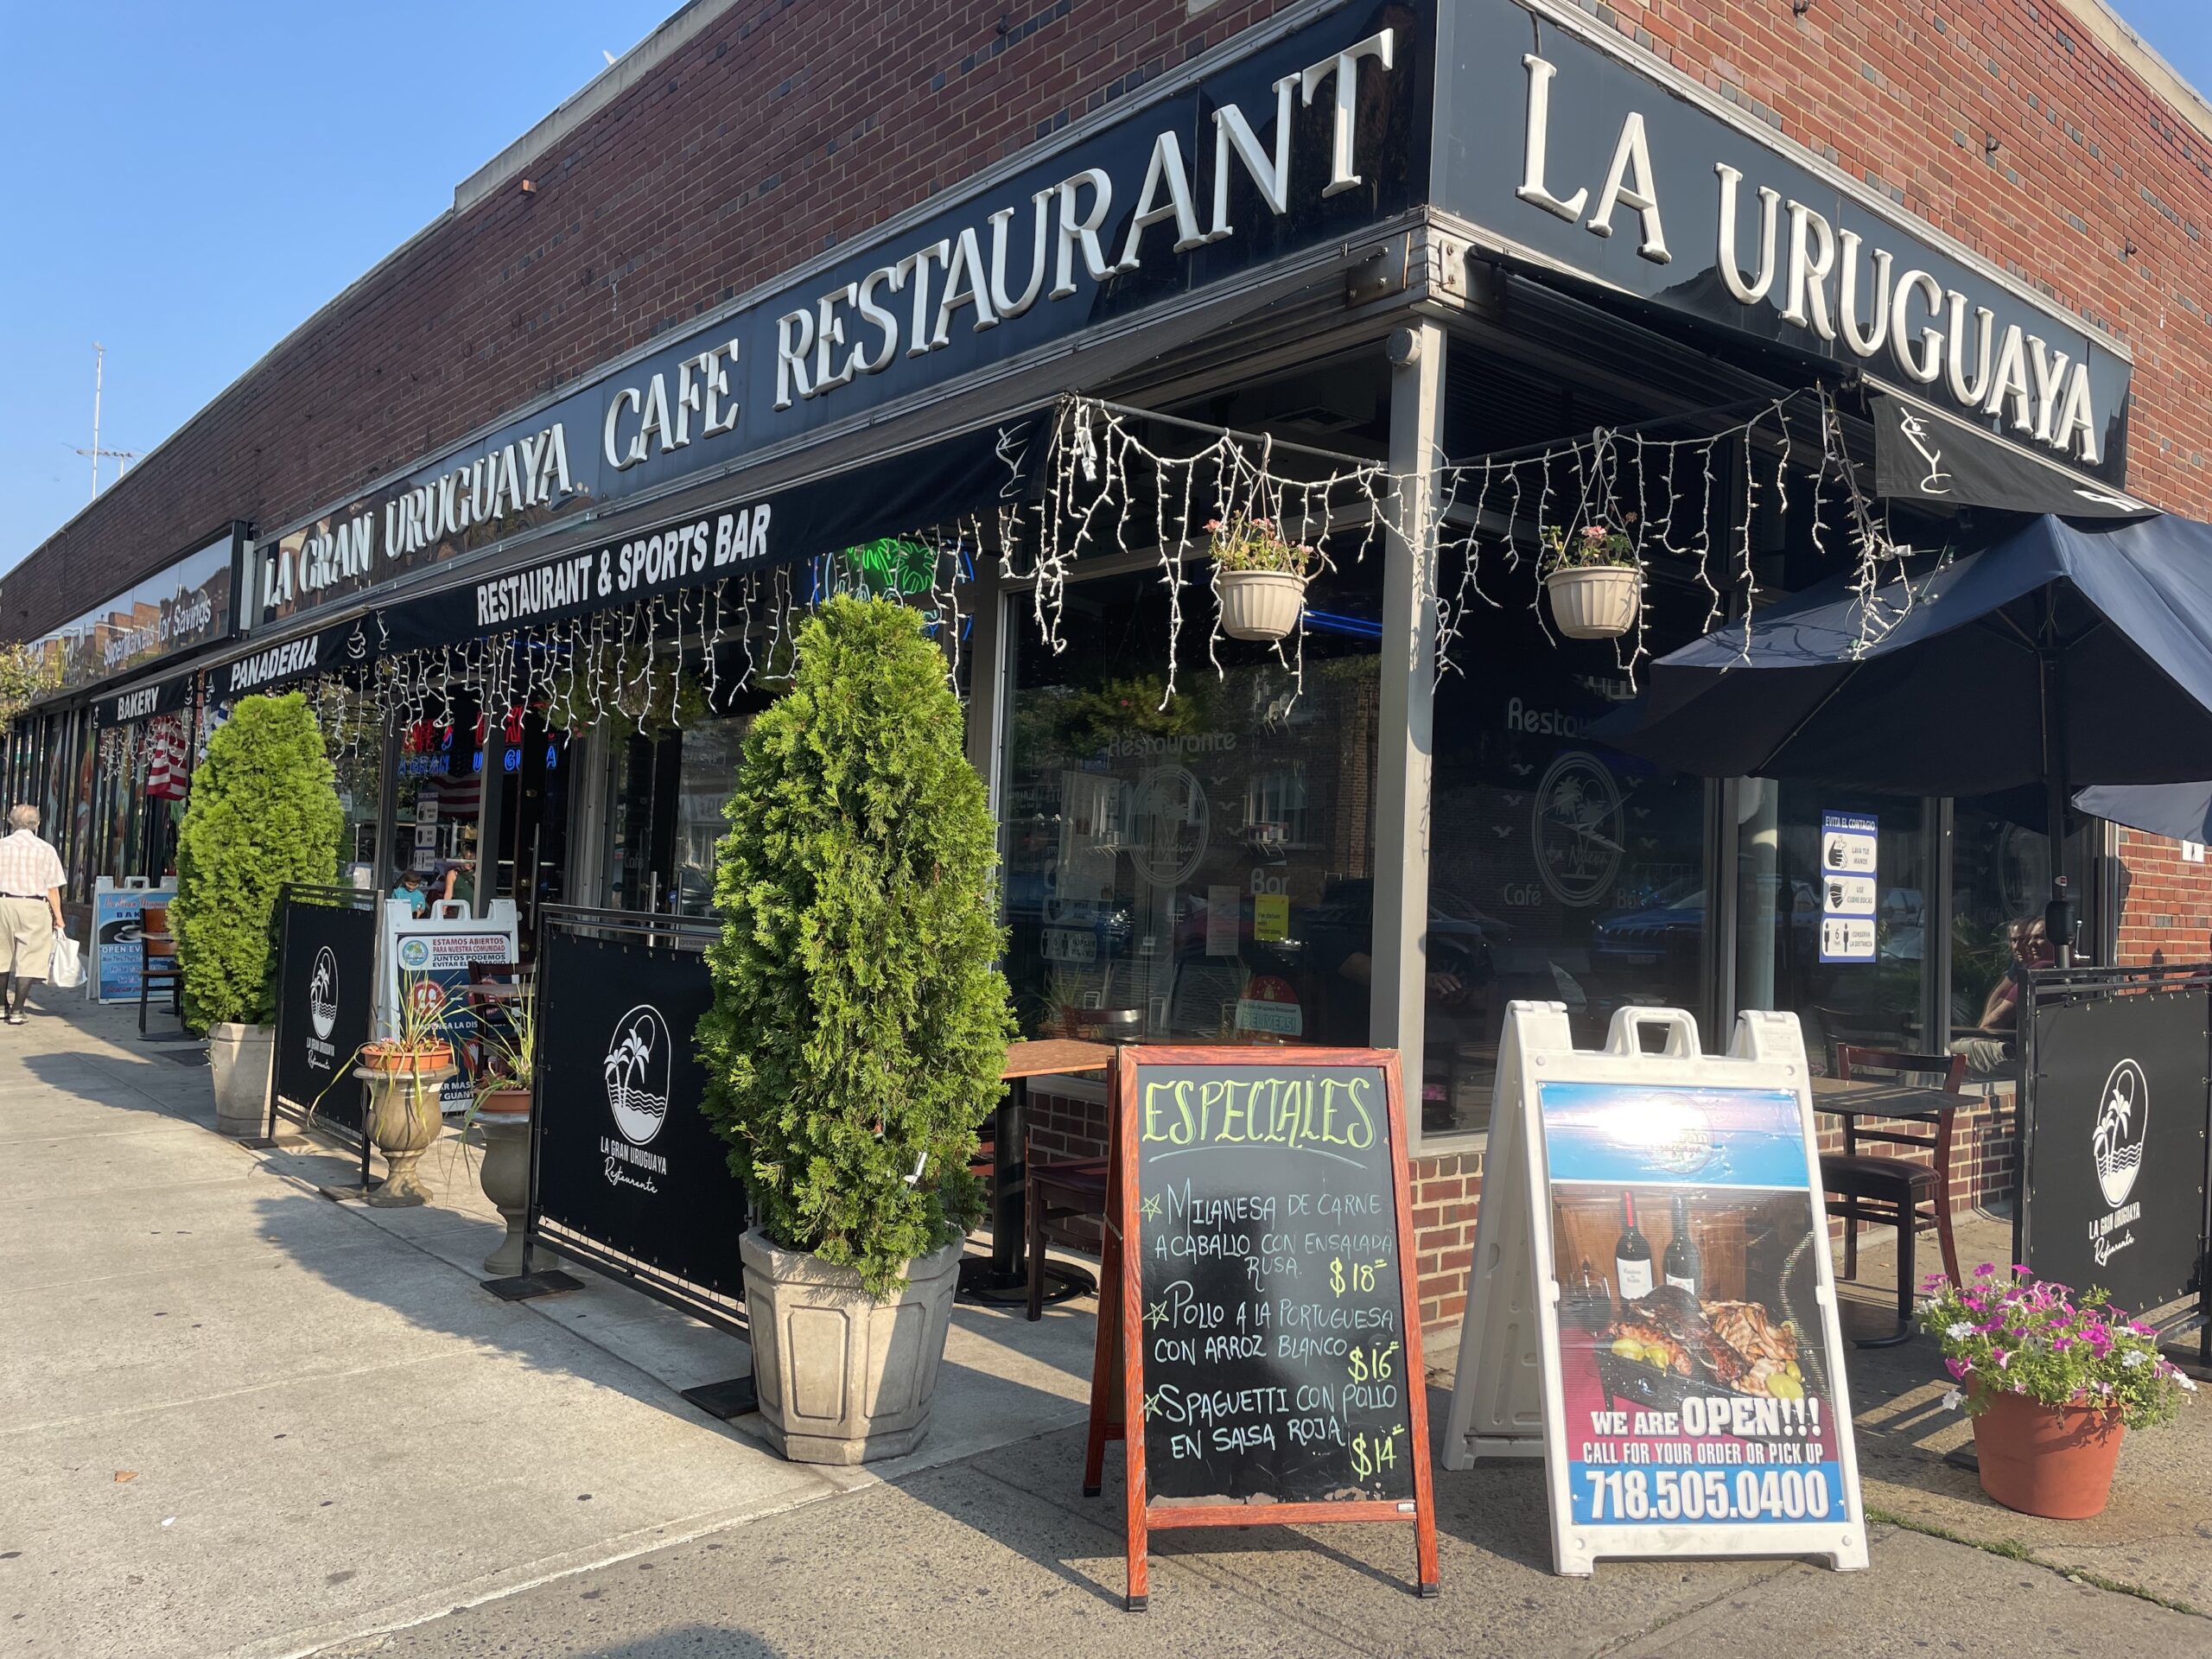 The front of La Gran Uruguaya Restaurant in Jackson Heights, Queens